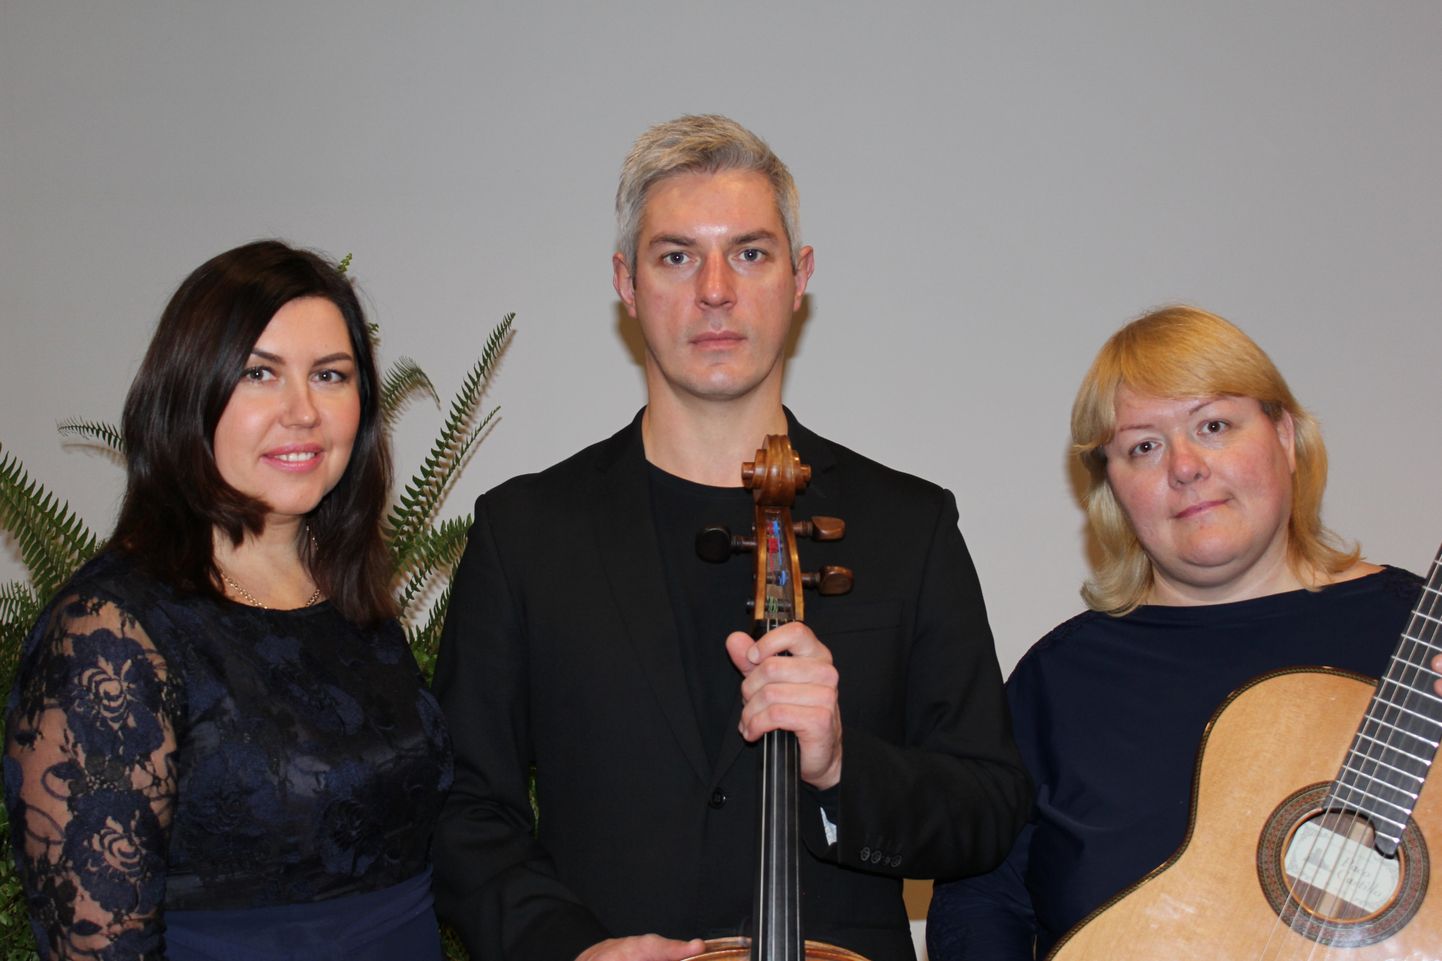 Новое трио эстонских музыкантов - Светлана Кекишева (орган), Андреас Ленд (виолончель), Елена Осипова (гитара) - исполнит произведения западных и эстонских композиторов.